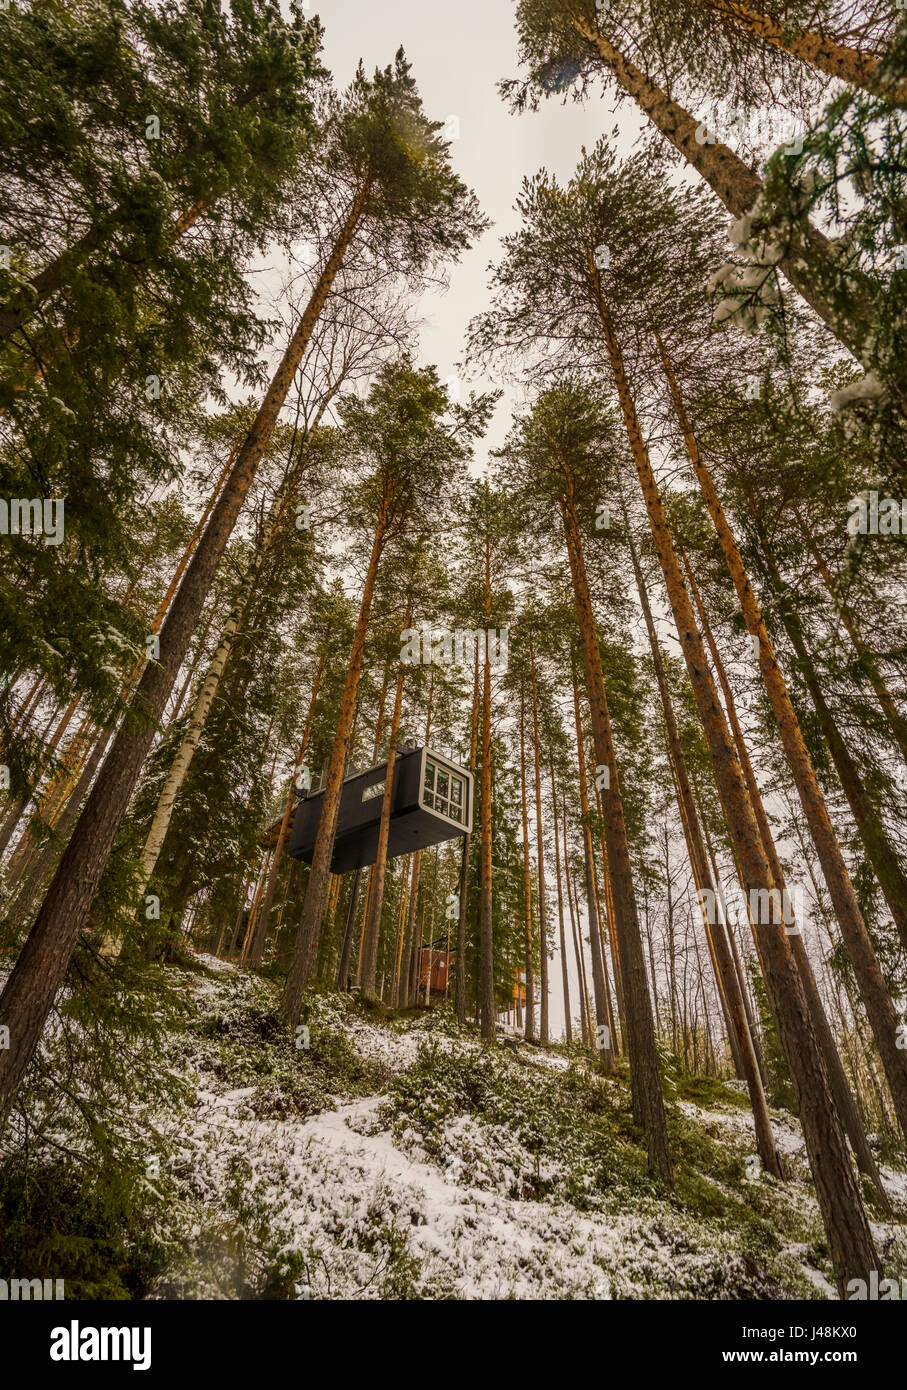 Accommodation dans les bois, connu sous le nom de cabane à l'arbre Hôtel en Laponie, Suède Banque D'Images